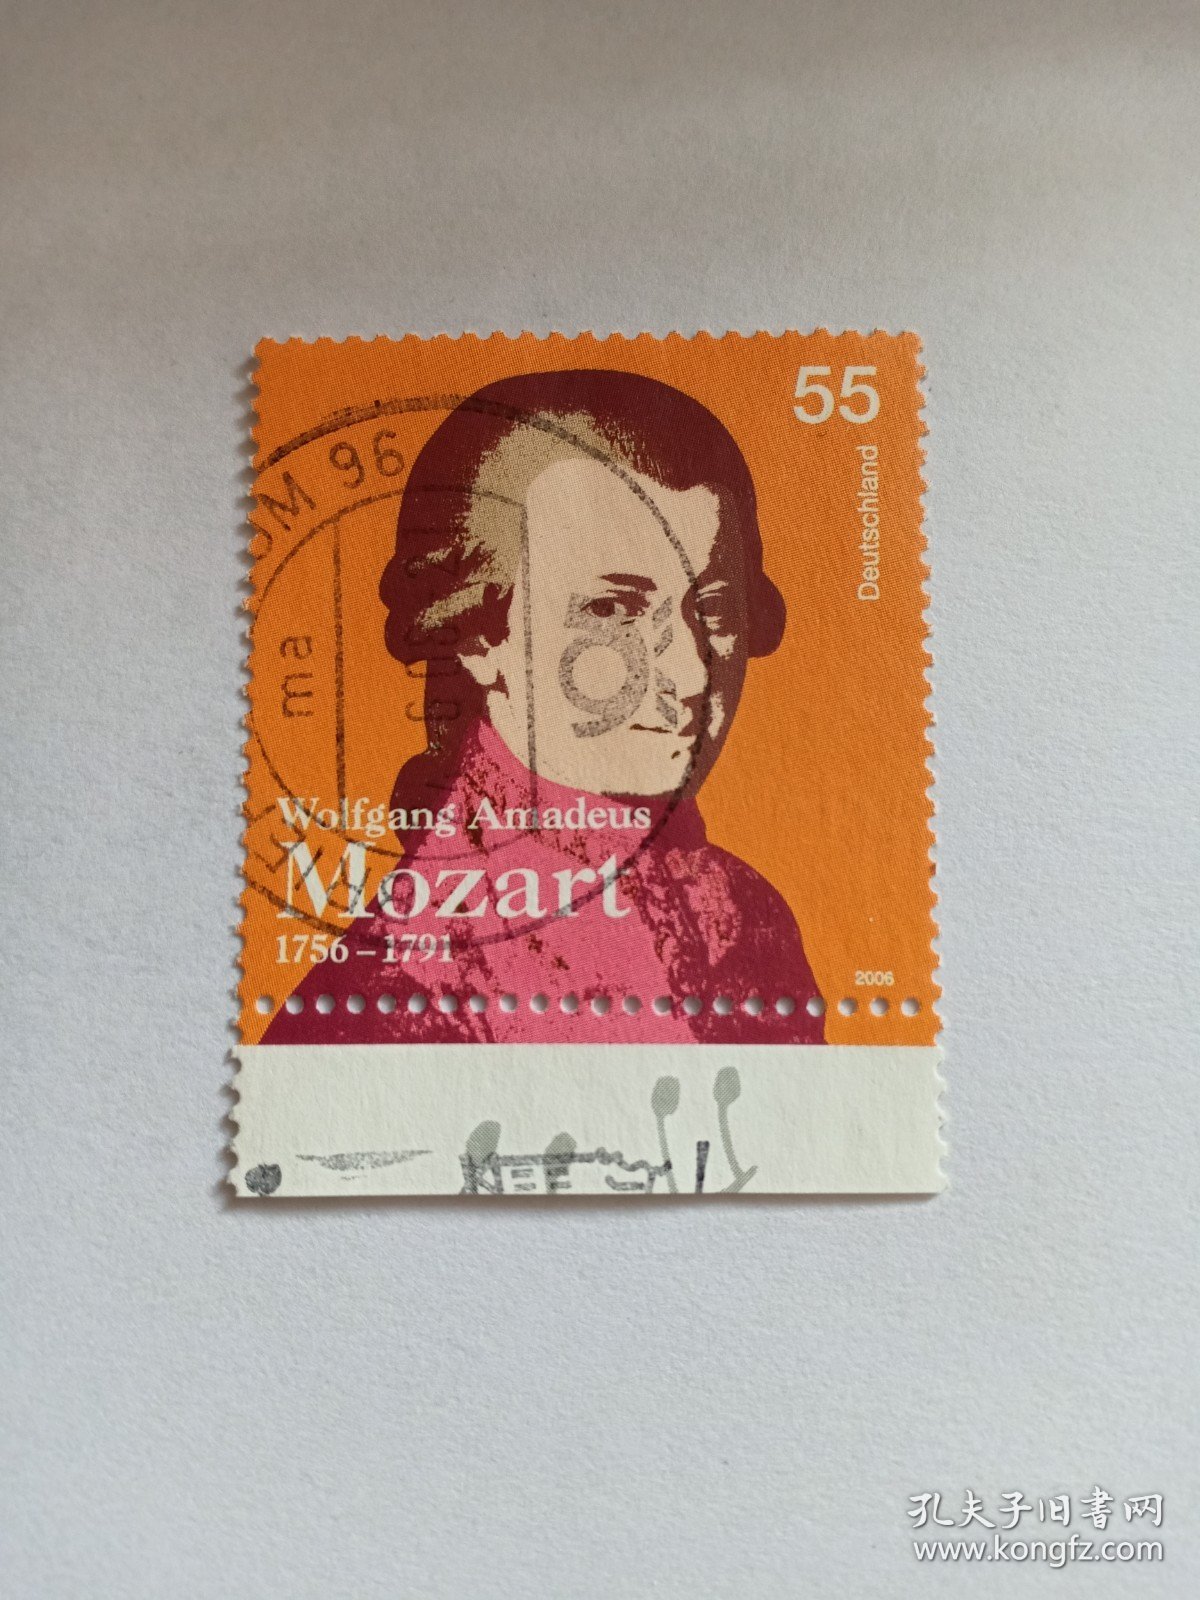 德国邮票 55c 2006年莫扎特诞辰250周年1756-1791年 莫扎特像 带边 沃尔夫冈·阿玛多伊斯·莫扎特 奥地利古典主义作曲家，维也纳古典乐派代表人物。1764年创作首部交响曲《降E大调第一交响曲》1772年莫扎特被任命为萨尔茨堡宫廷乐师。1781年脱离对雇主的依赖，成为历史上最早的自由作曲家。1786年歌剧《费加罗的婚礼》在维也纳首演。1787年被任命为宫廷作曲家。1791年歌剧《魔笛